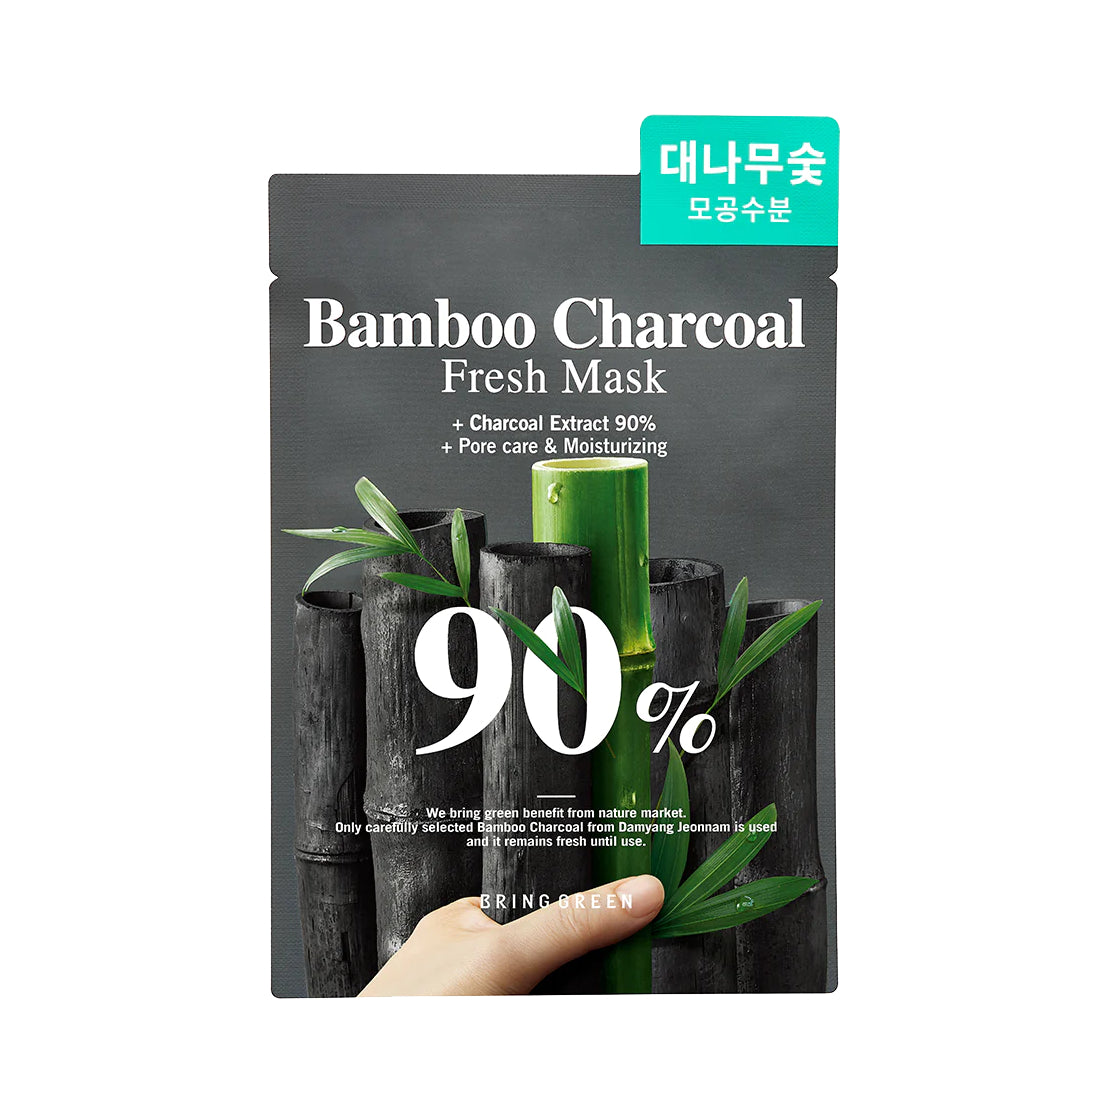 Bring Green Bamboo Charcoal 90% Fresh Mask Beauty Bring Green 1 sheet  